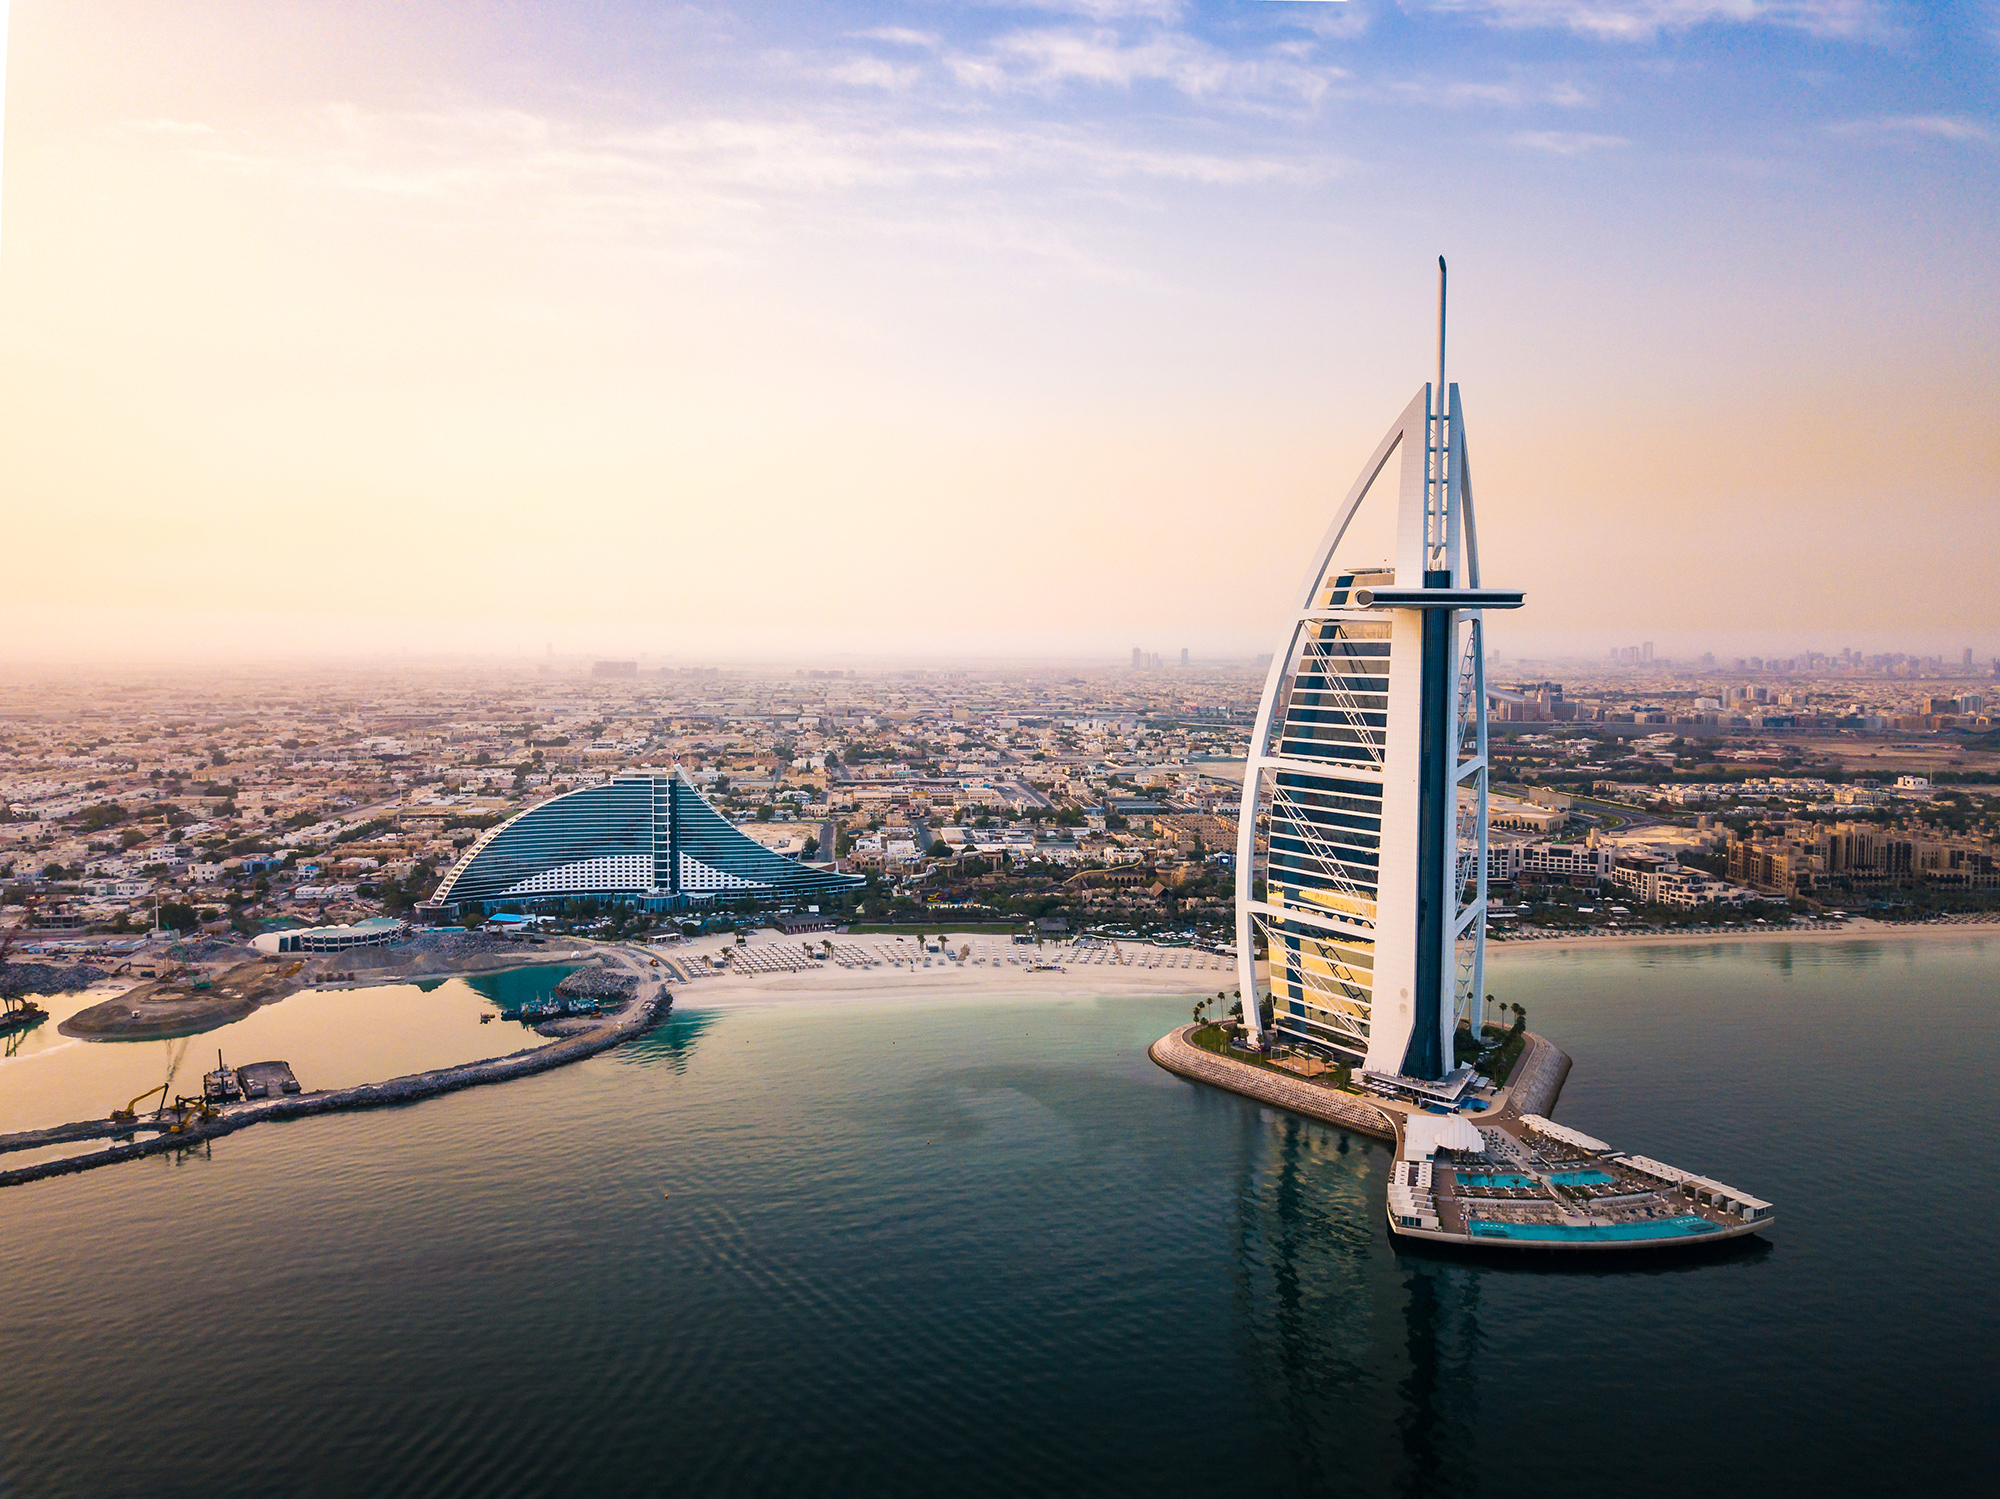 Dubai-seaside-skyline-and-Burj-Al-Arab-luxury-hotel